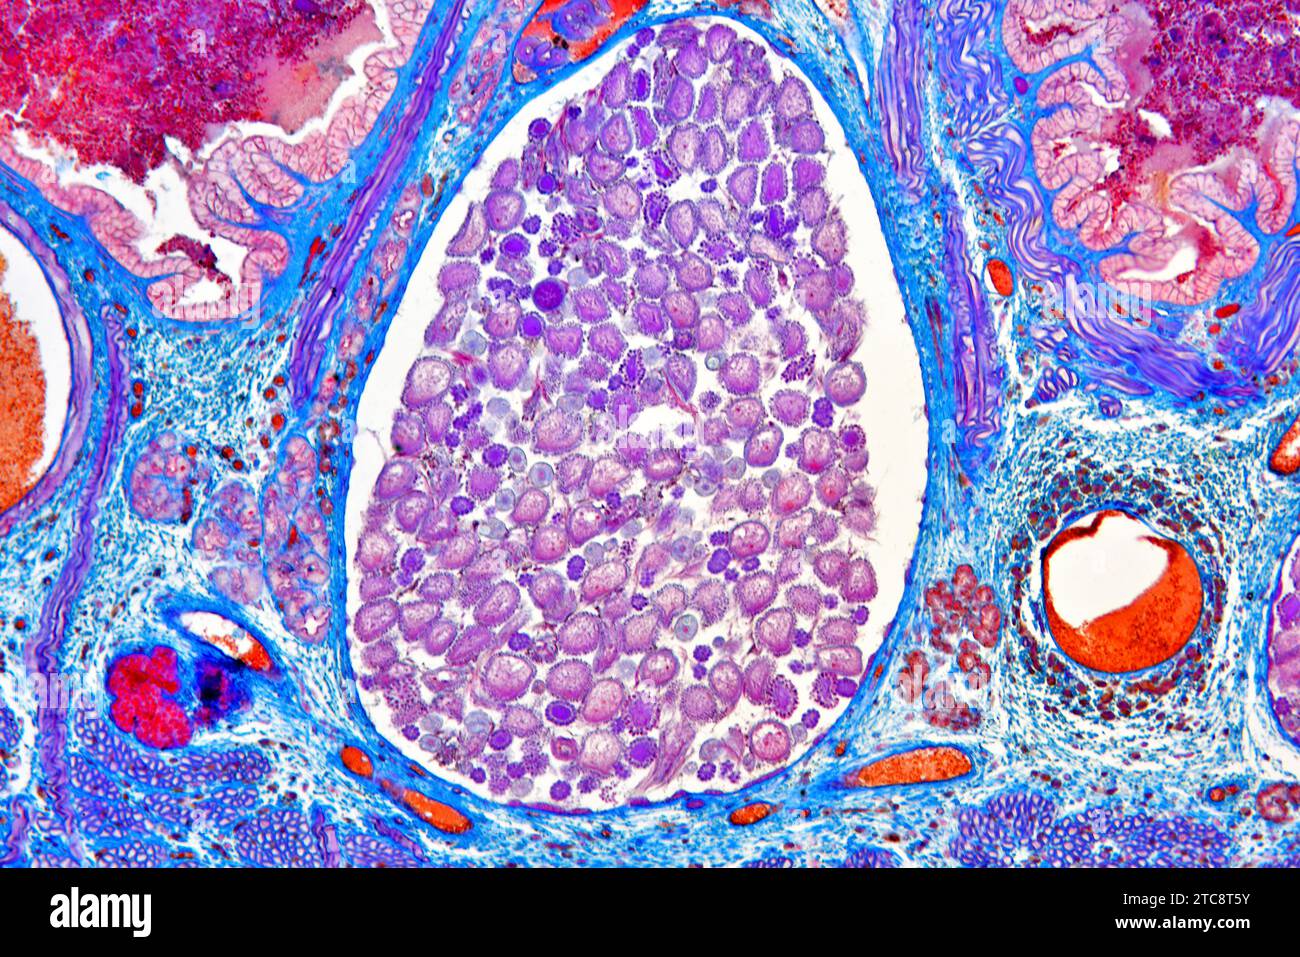 Sezione trasversale del leech medicinale europeo (Hirudo medicinalis) che mostra diverticolo dell'utero e dell'intestino e delle colture. Microscopio leggero X150 con larghezza di 10 cm. Foto Stock